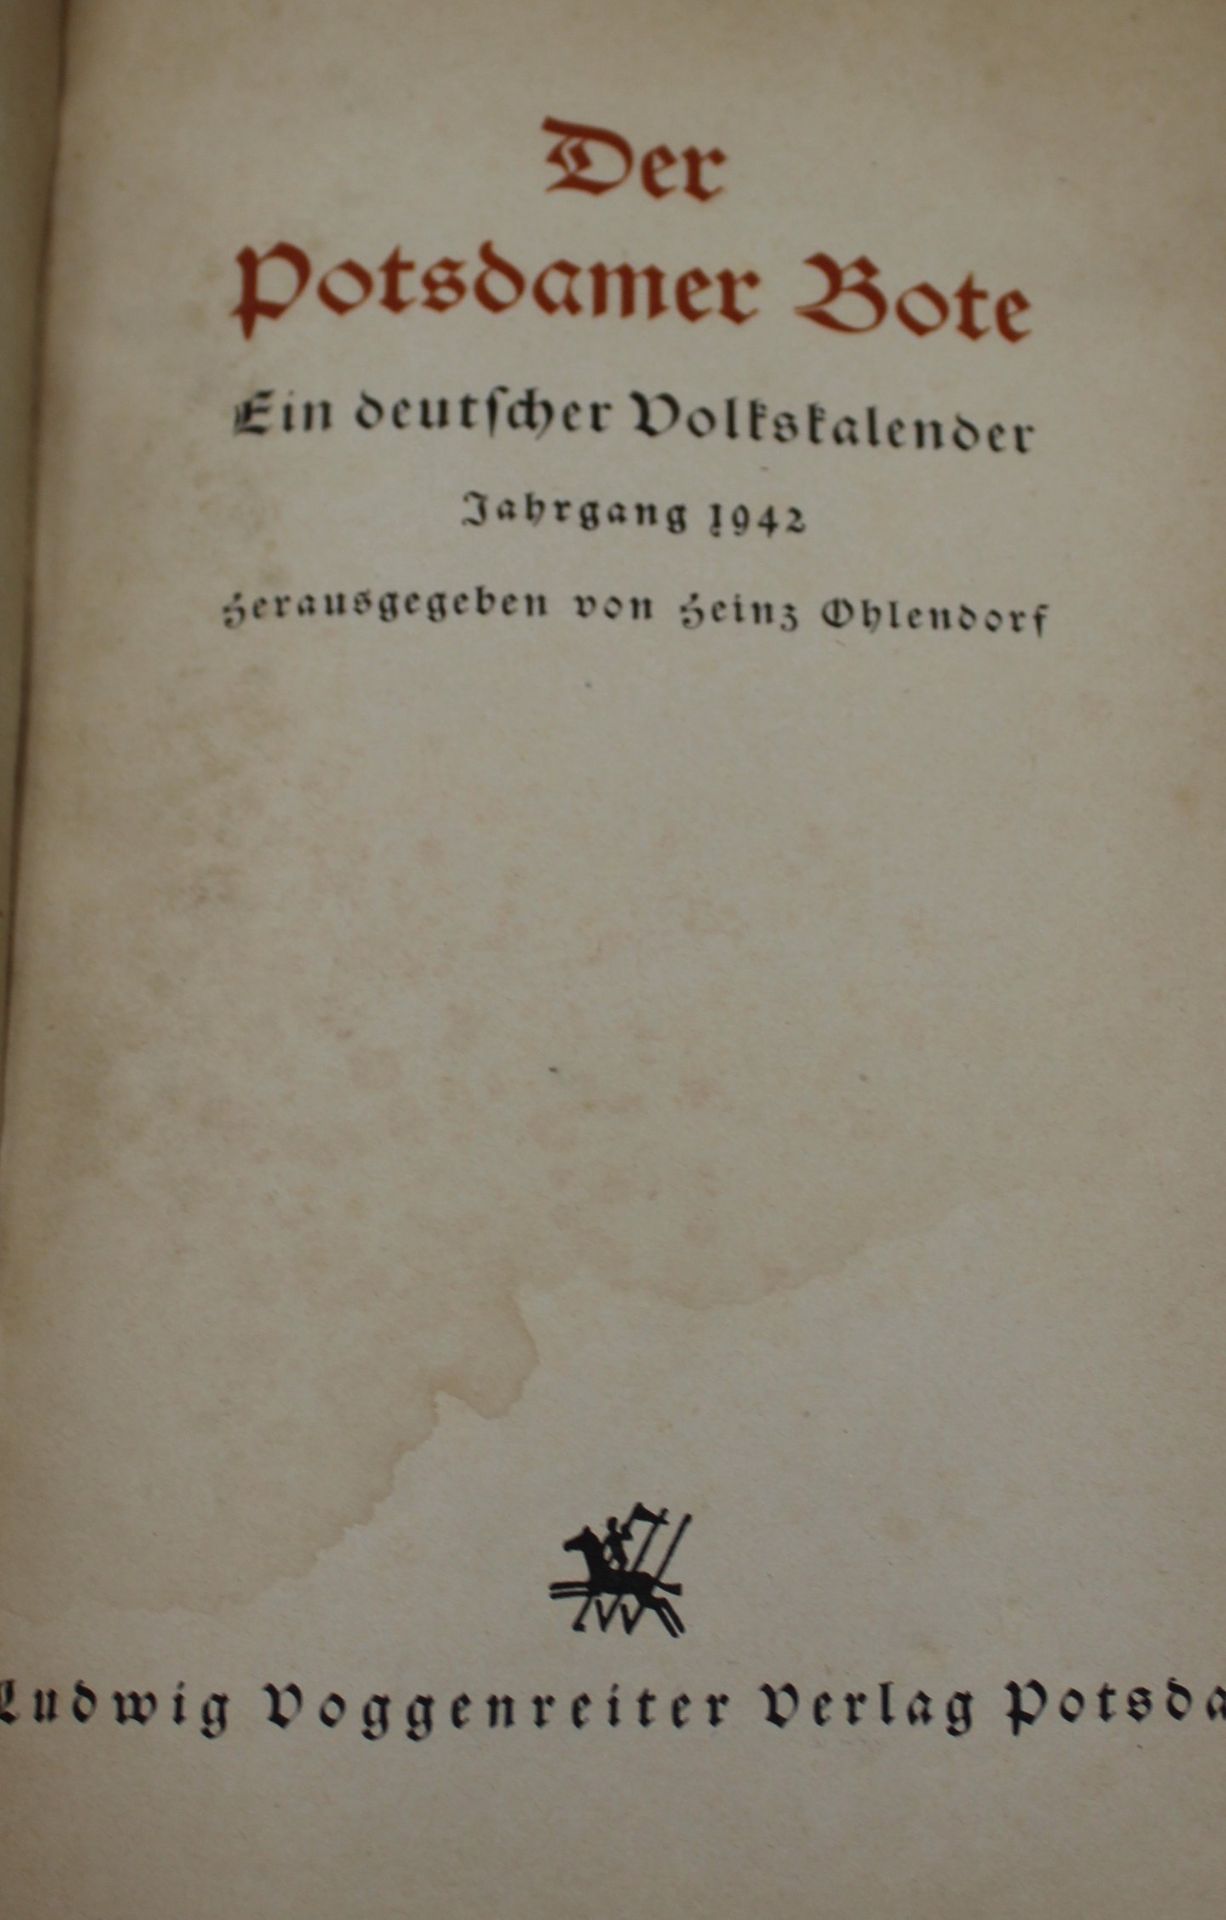 Potsdamer Bote  1942/43, Paperback, Gebrauchsspuren - Bild 2 aus 3